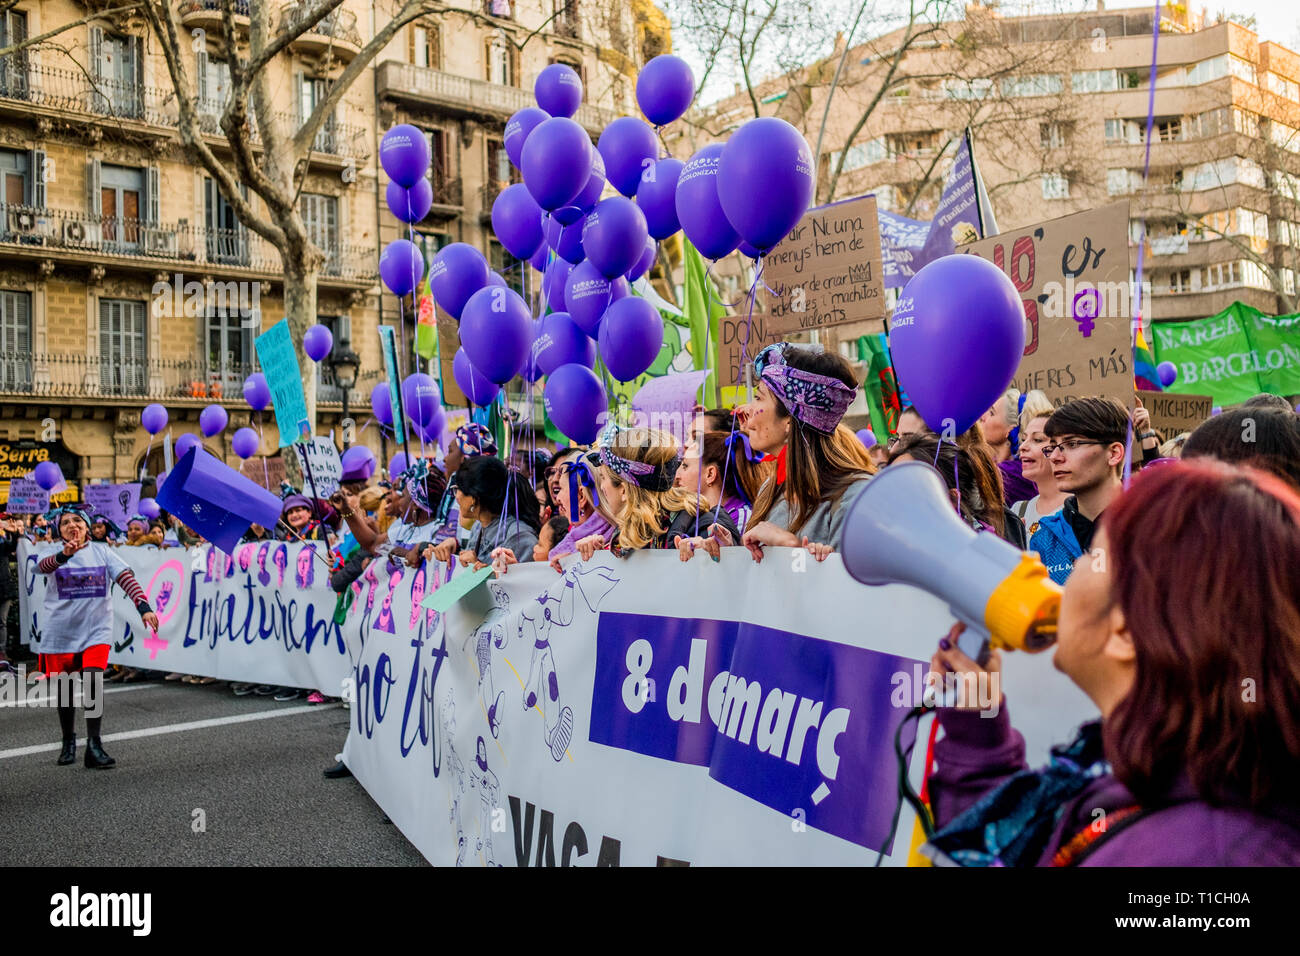 Barcelona, España - 8 de marzo de 2019: las mujeres cantando y calpping en la ciudad durante el día de la mujer con globos púrpura Foto de stock